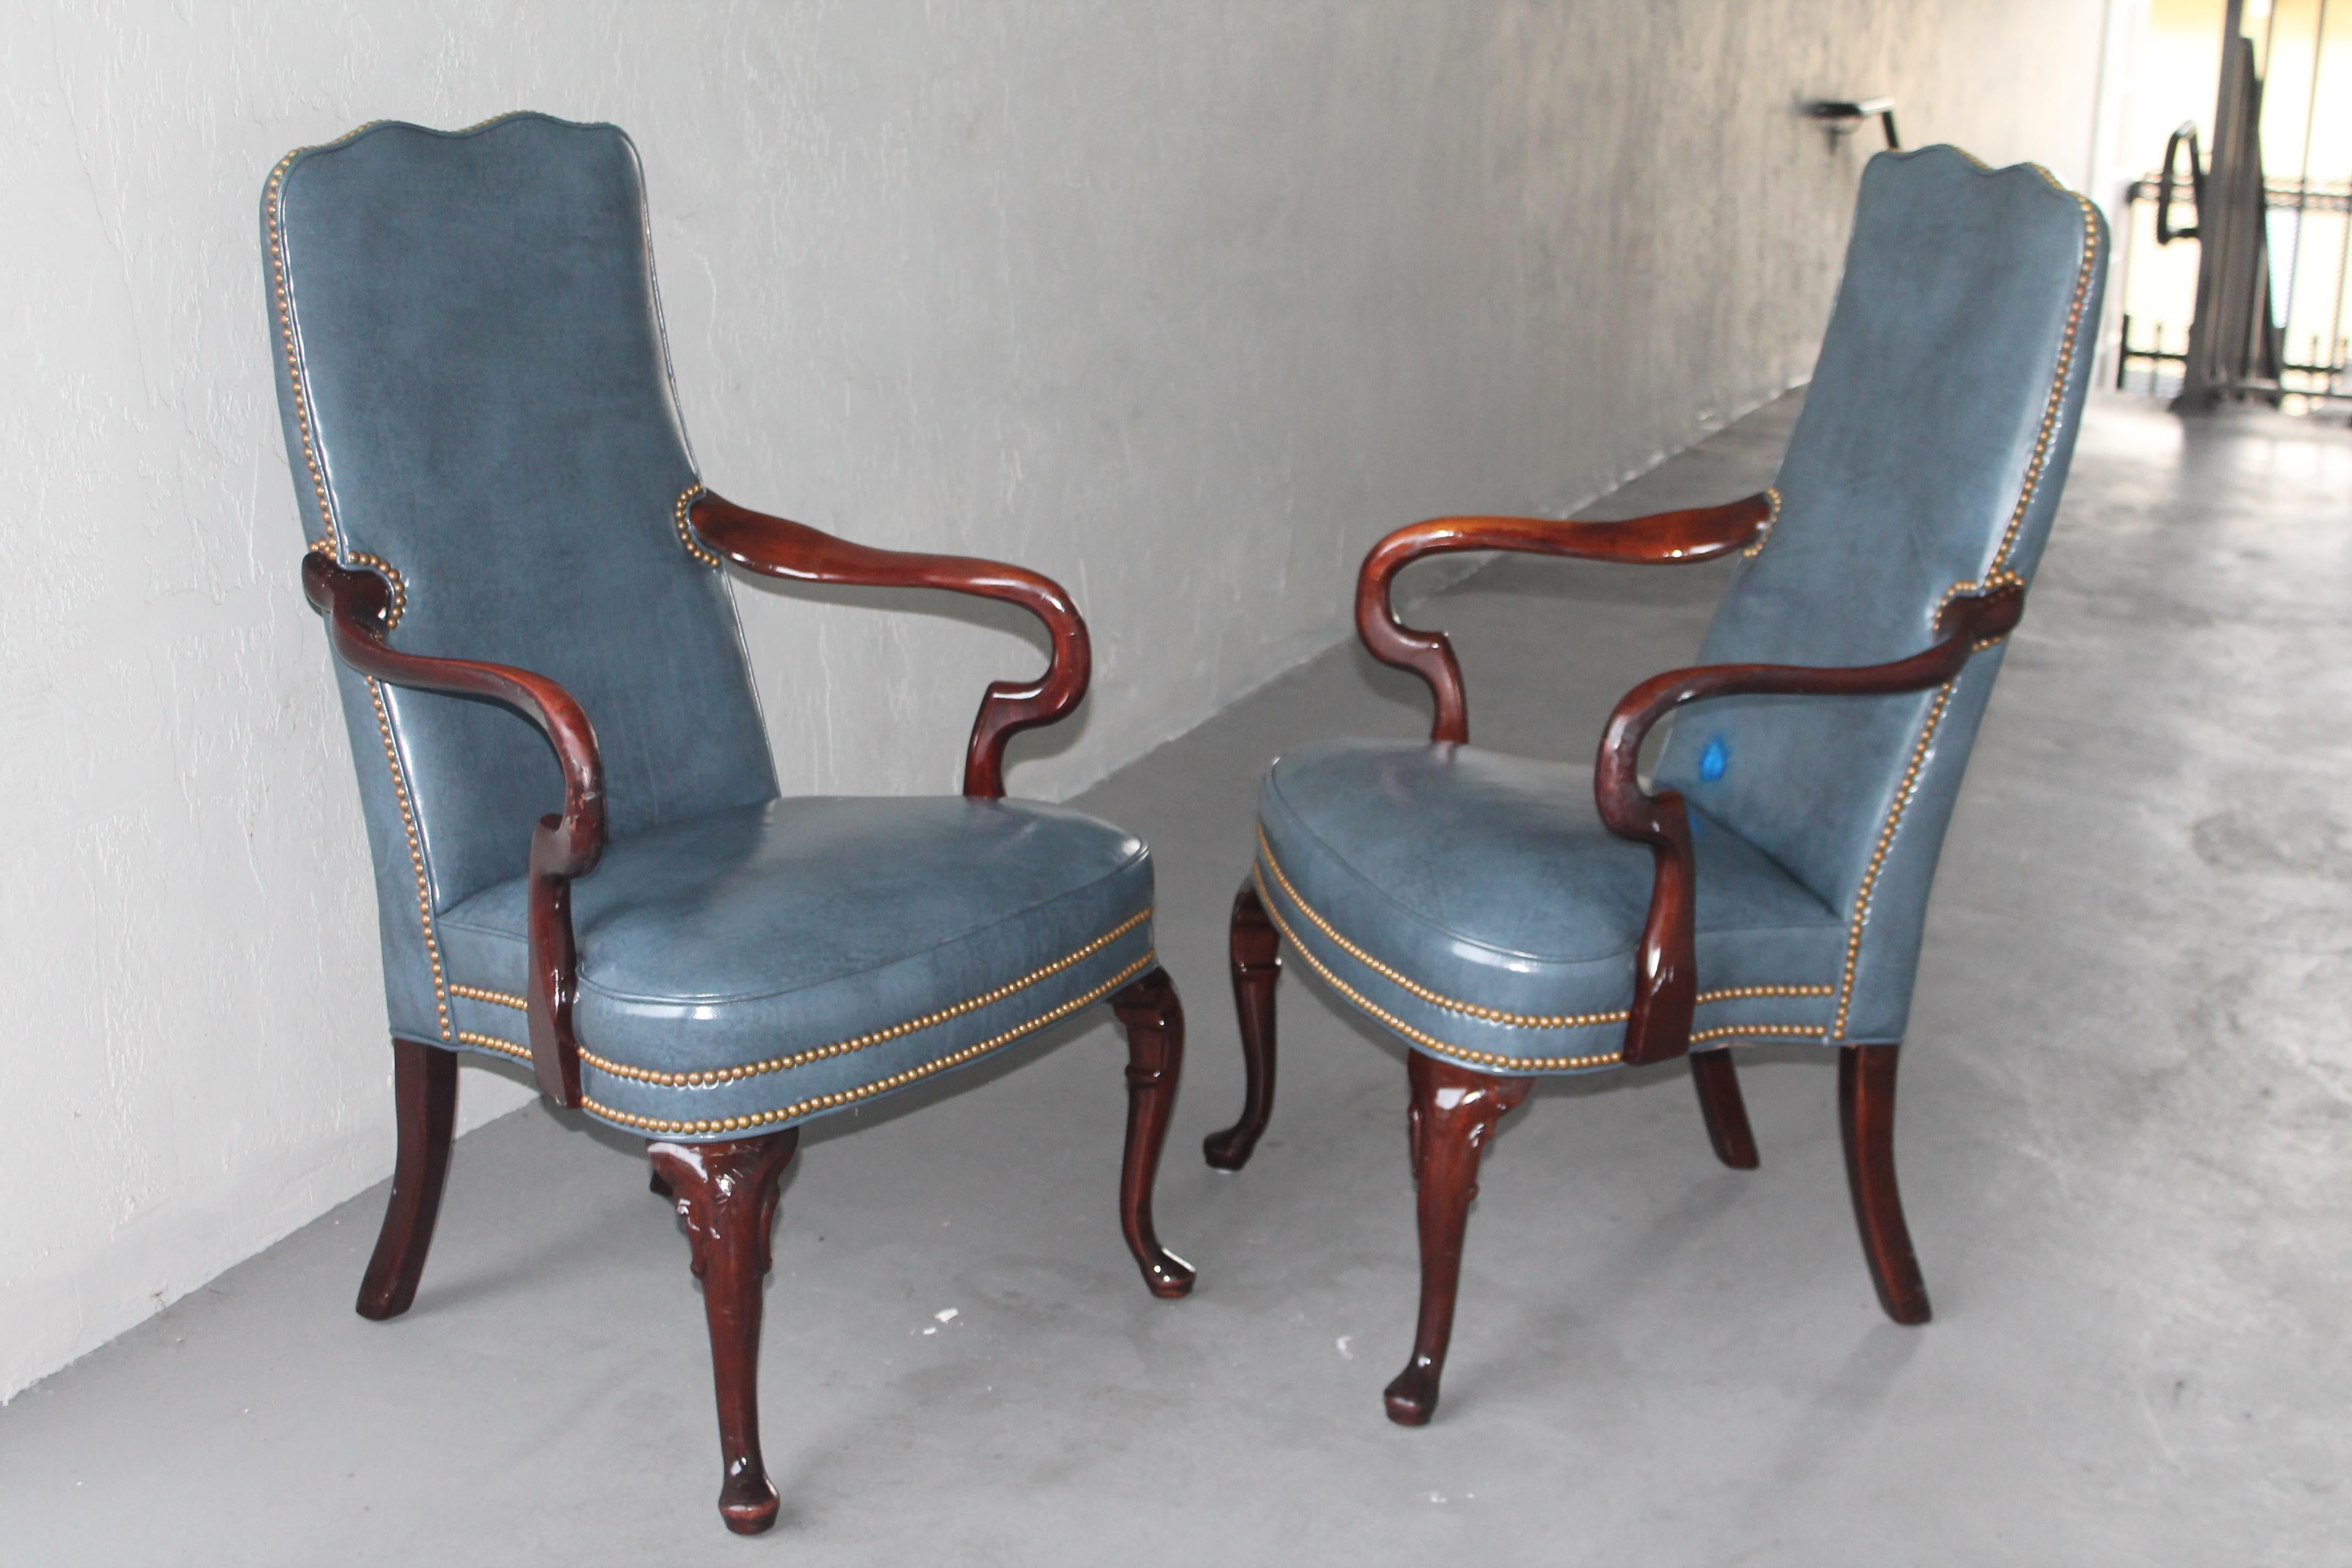 Paire de chaises Parsons en bois sculpté et cuir bleu. Très unique et de très haute qualité. La sculpture sur bois est exceptionnelle et le cuir bleu est magnifique ! Recherche immobilière à Miami Beach.